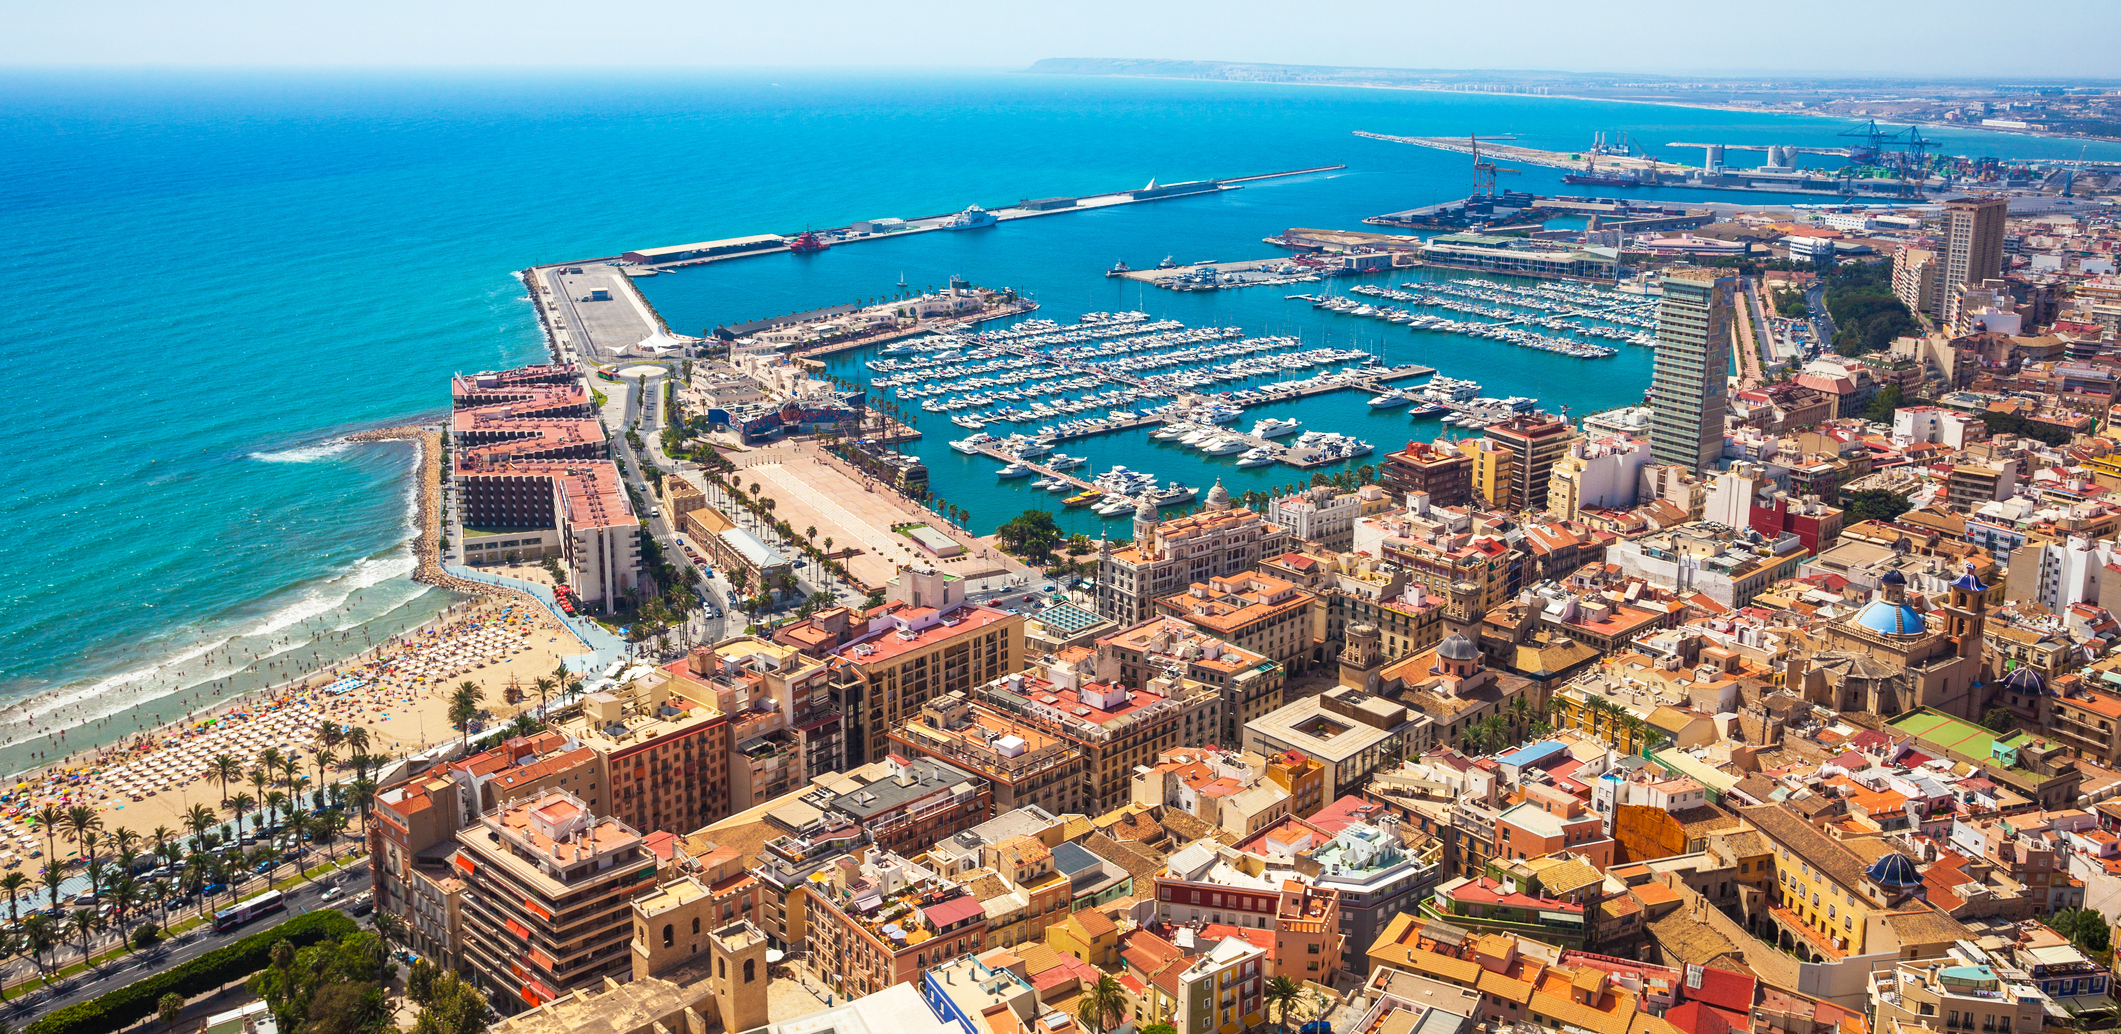 Alicante - an aerial view